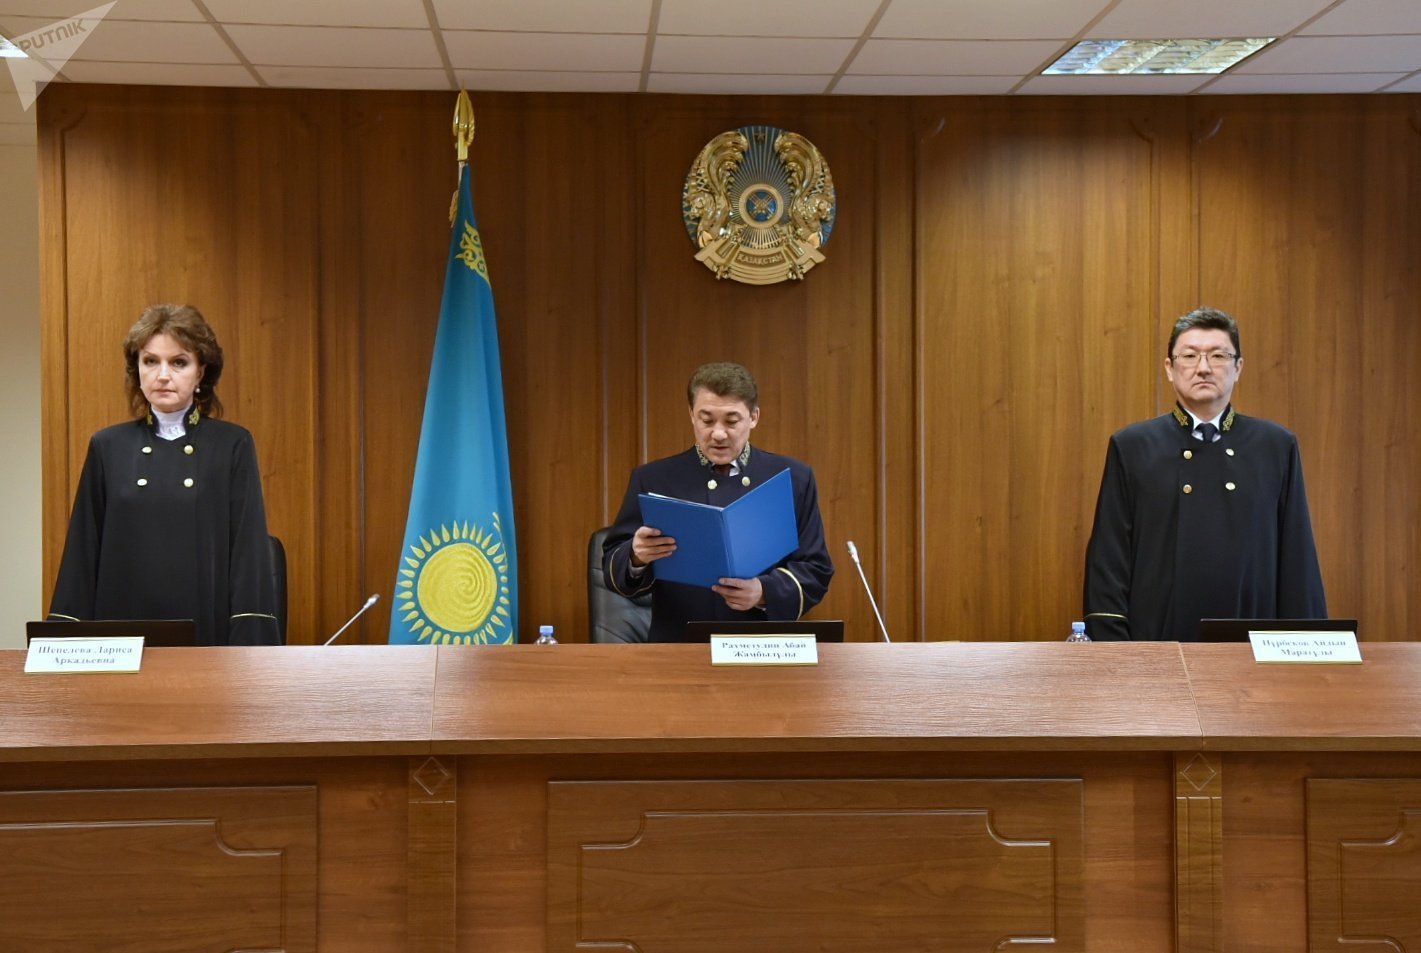 Уголовная коллегия Верховного суда Казахстана огласила приговор по делу Владислава Челаха, отбывающего наказание за массовое убийство на пограничном посту Арканкерген